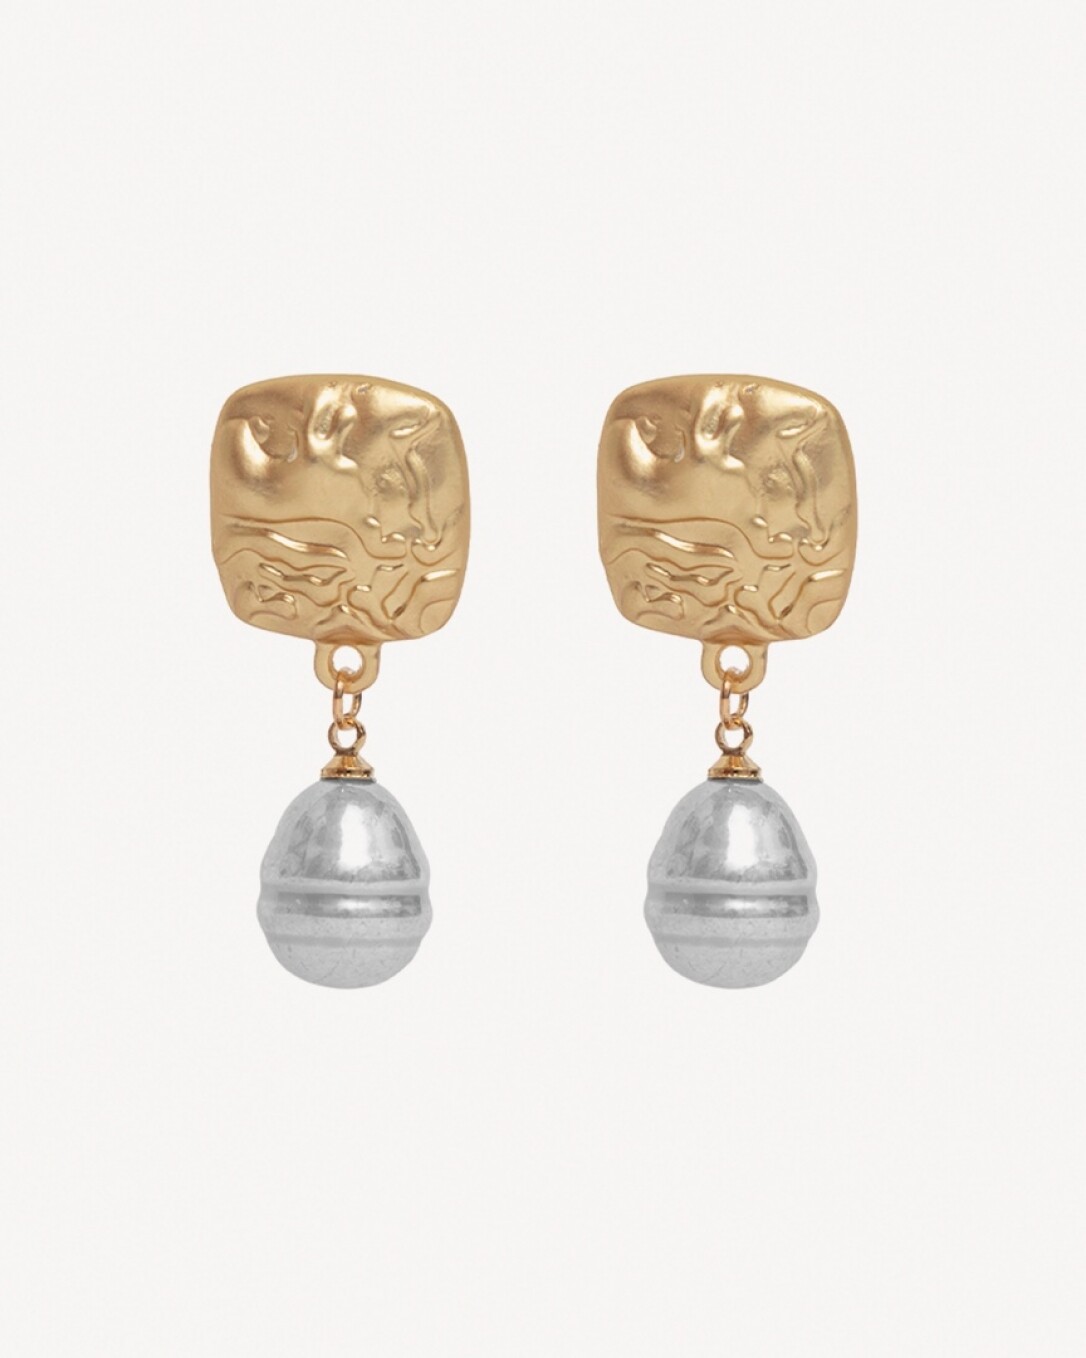 aros de bronce bañado en oro y en plata, perlas, homini studio